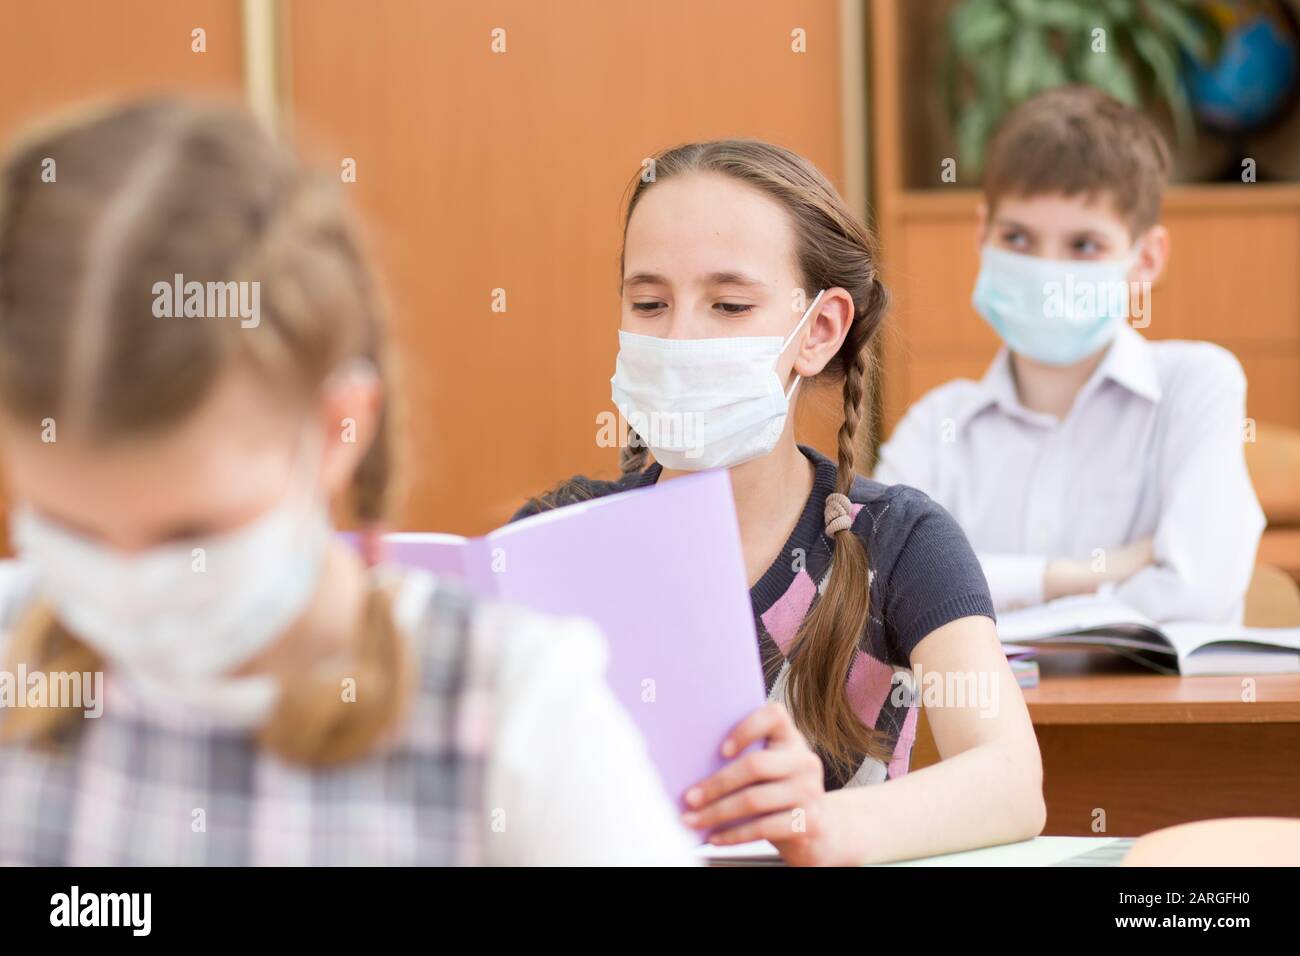 Los alumnos que usan máscara de protección para prevenir el virus durante la clase en la escuela Foto de stock